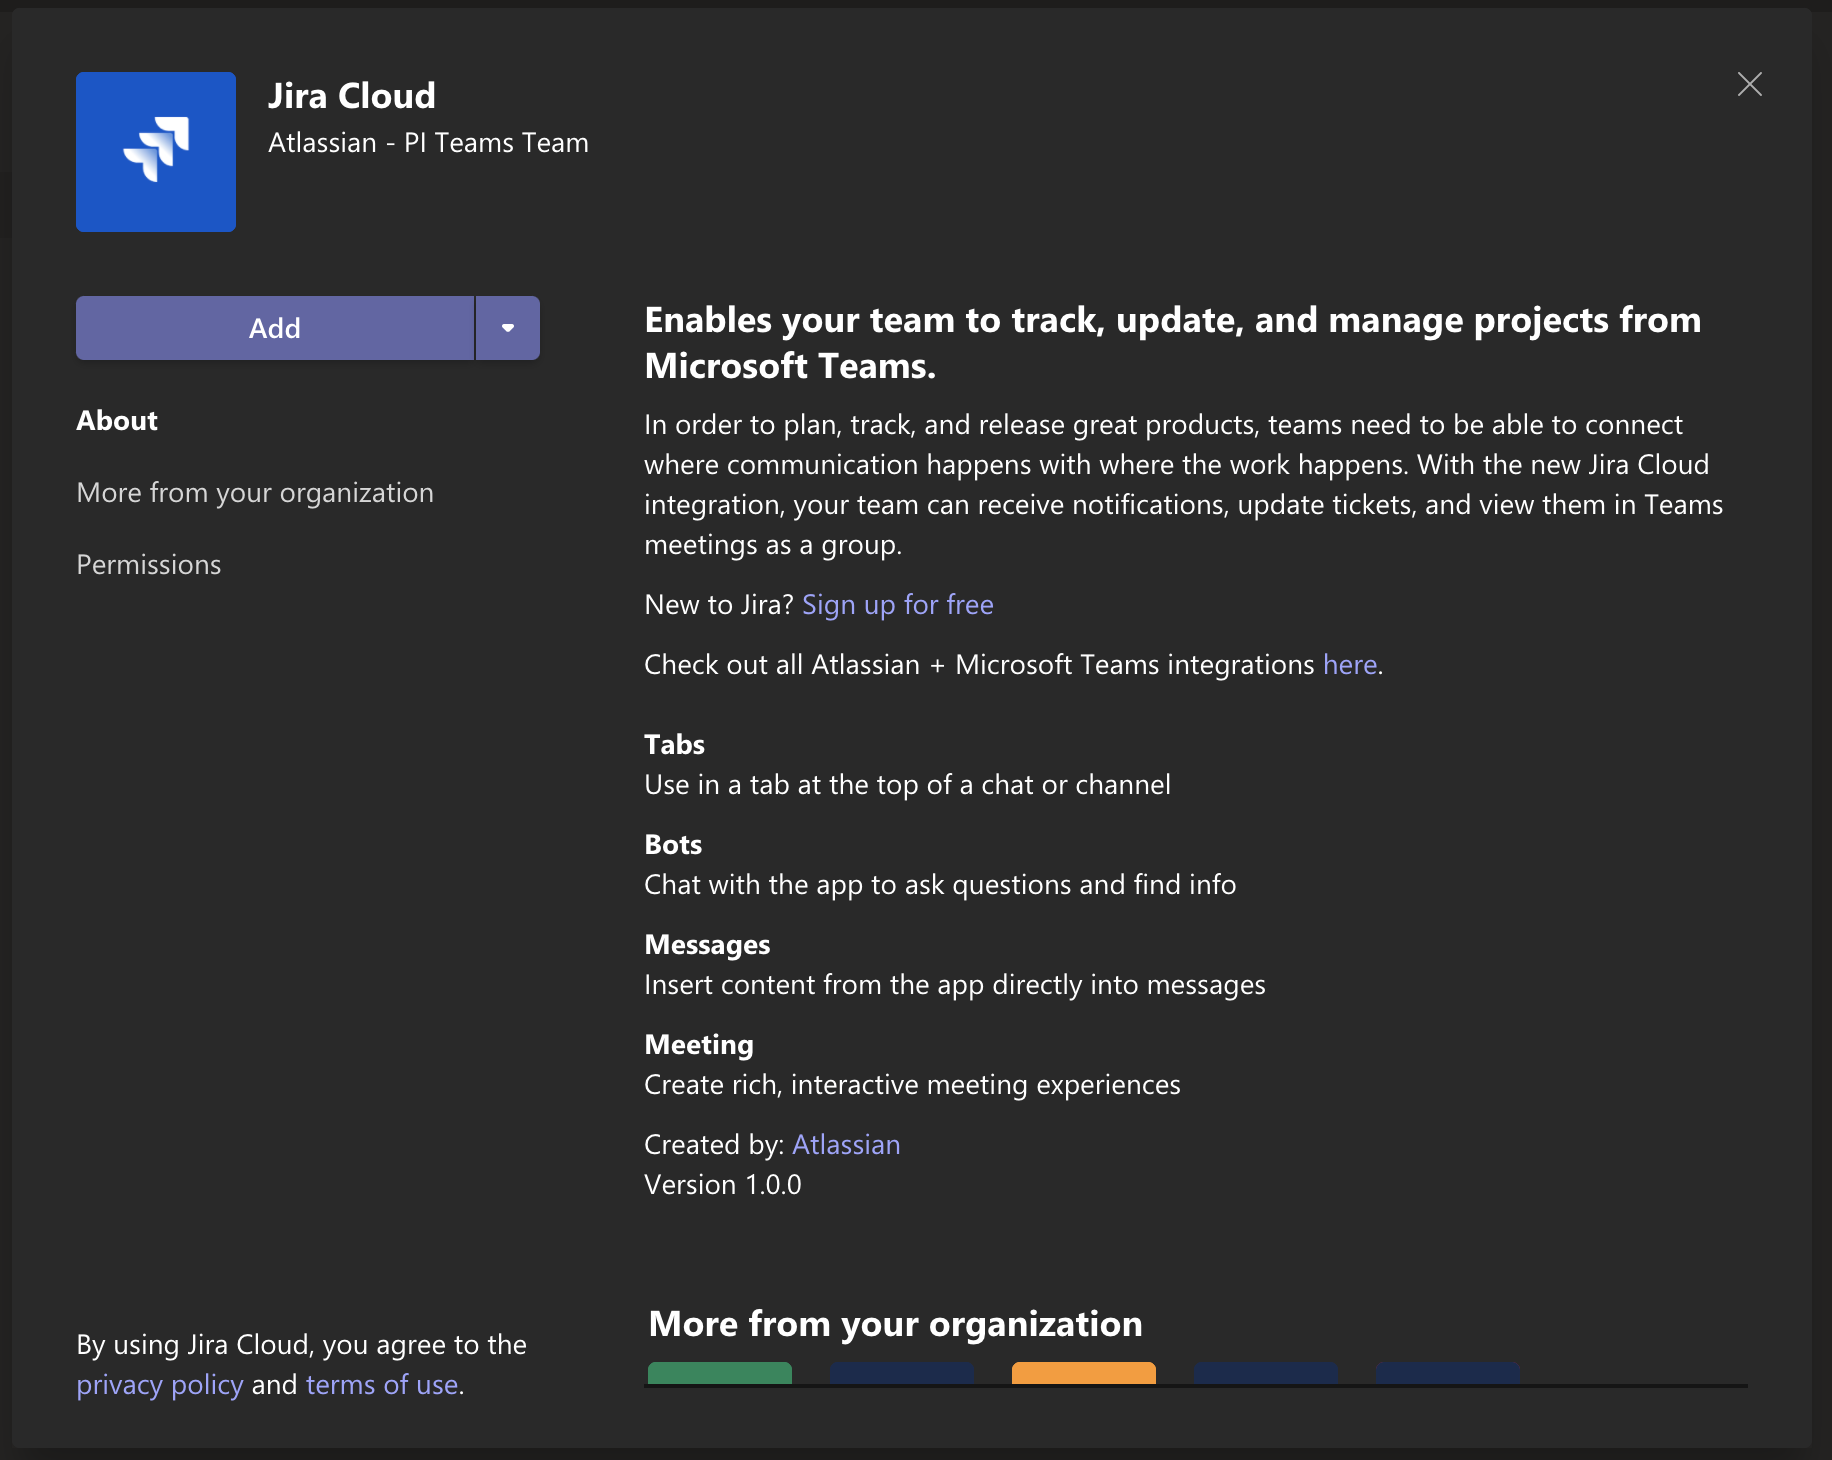 Details of the Jira Cloud app in Microsoft Teams